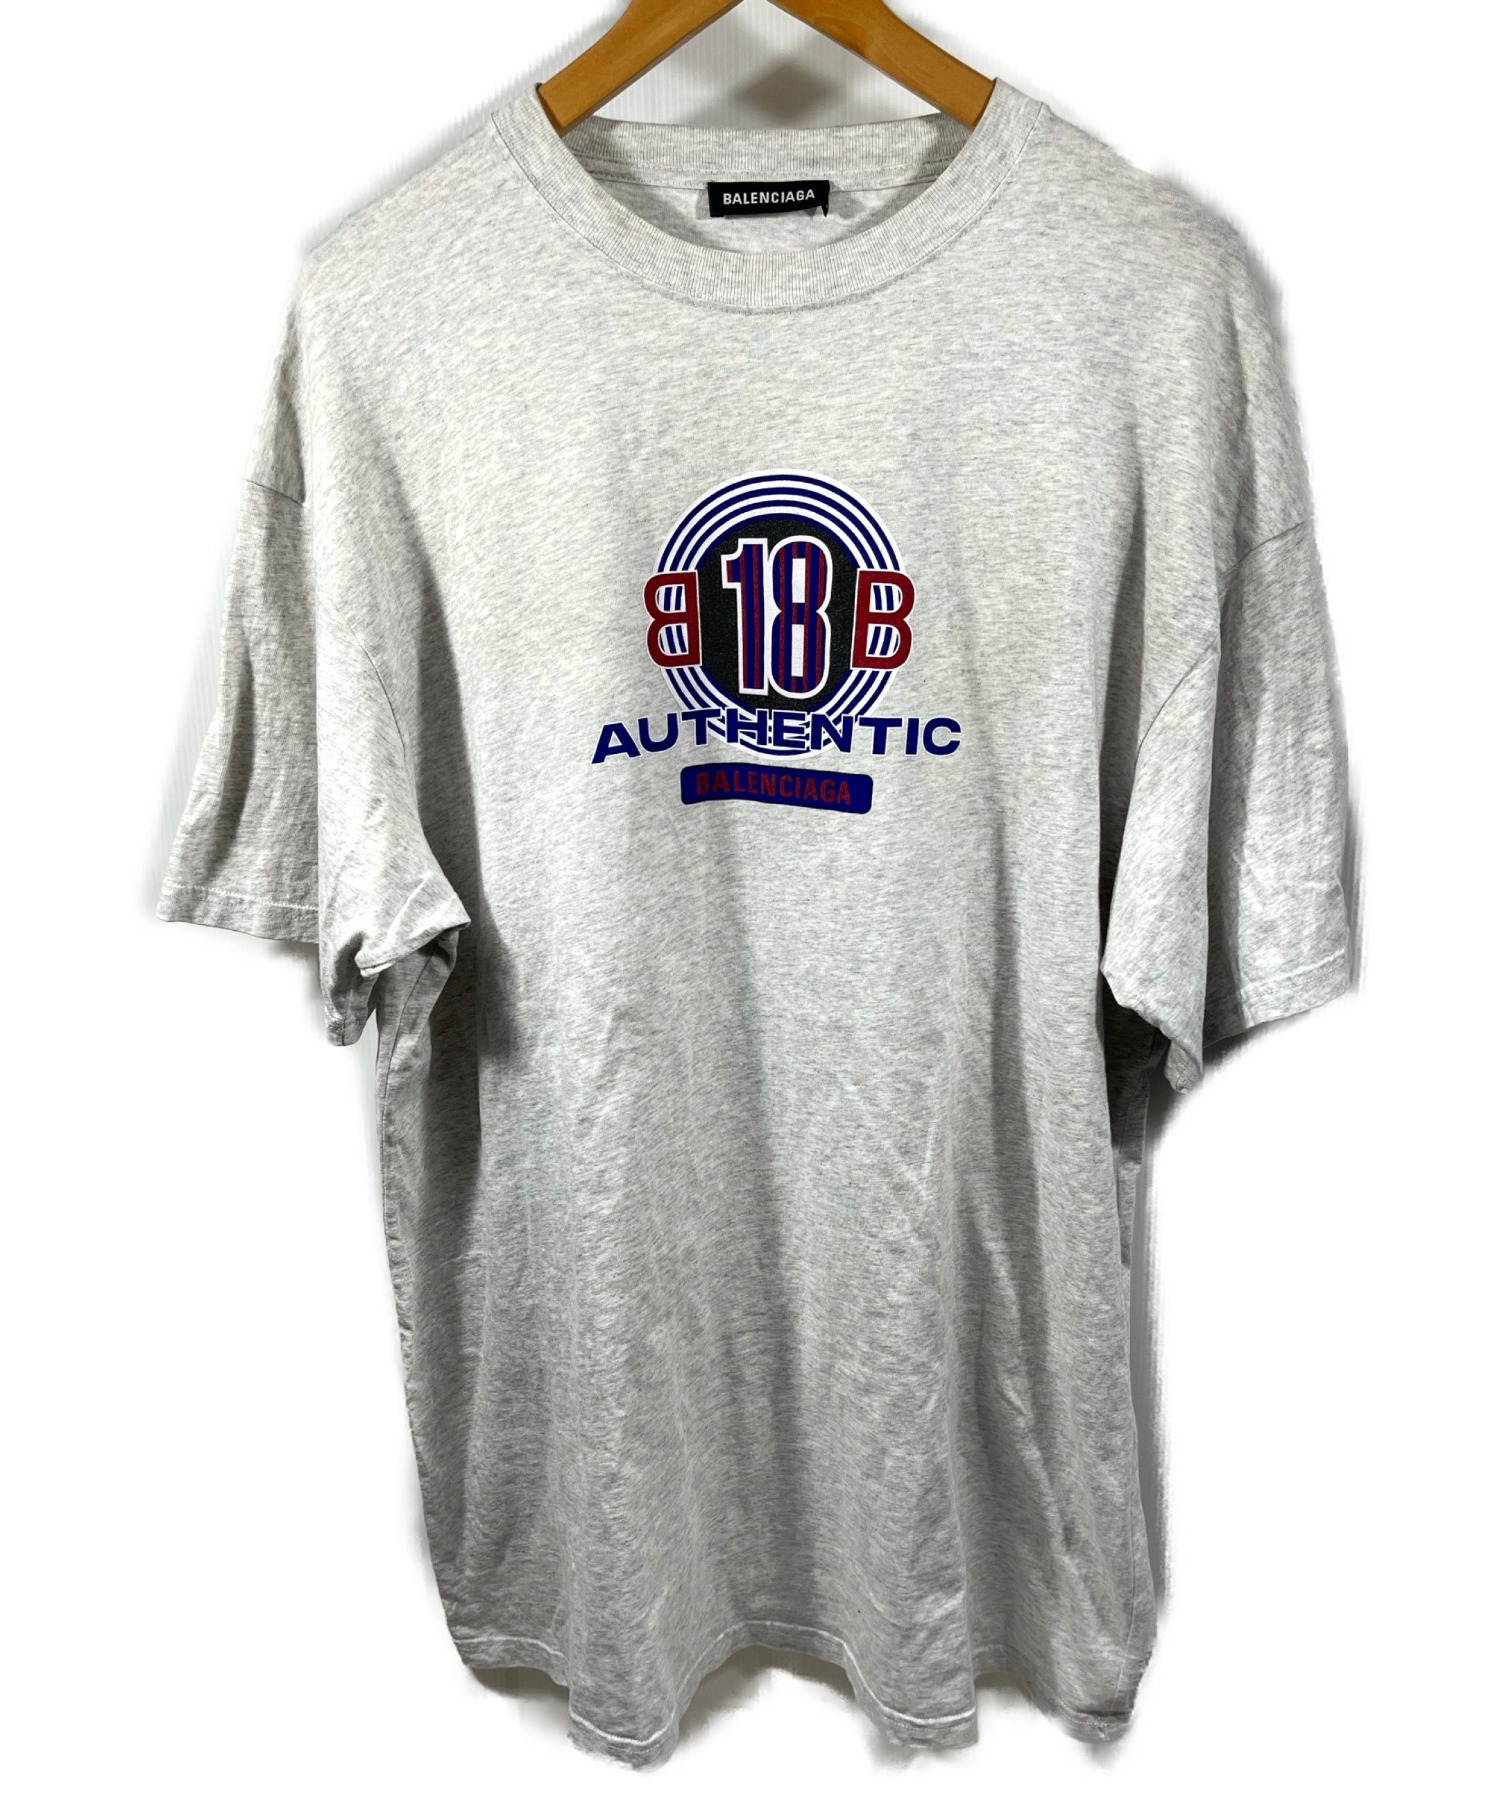 BALENCIAGA (バレンシアガ) 18AW graphic logo T-Shirt グレー サイズ:L